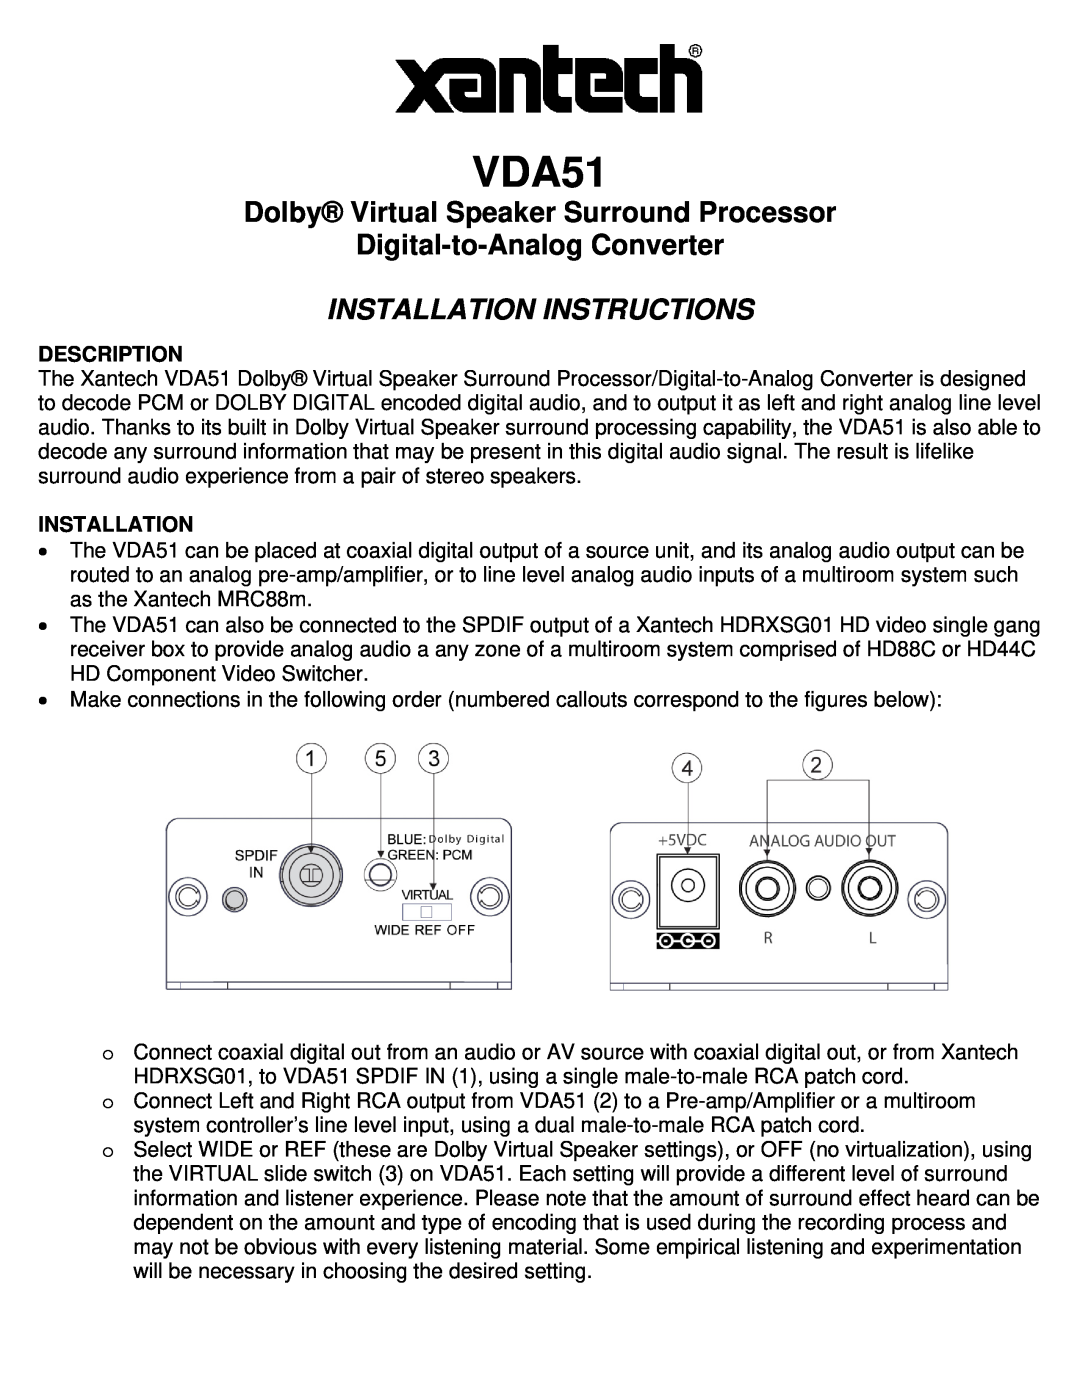 Xantech VDA51 installation instructions Description, Installation, Dolby Virtual Speaker Surround Processor 